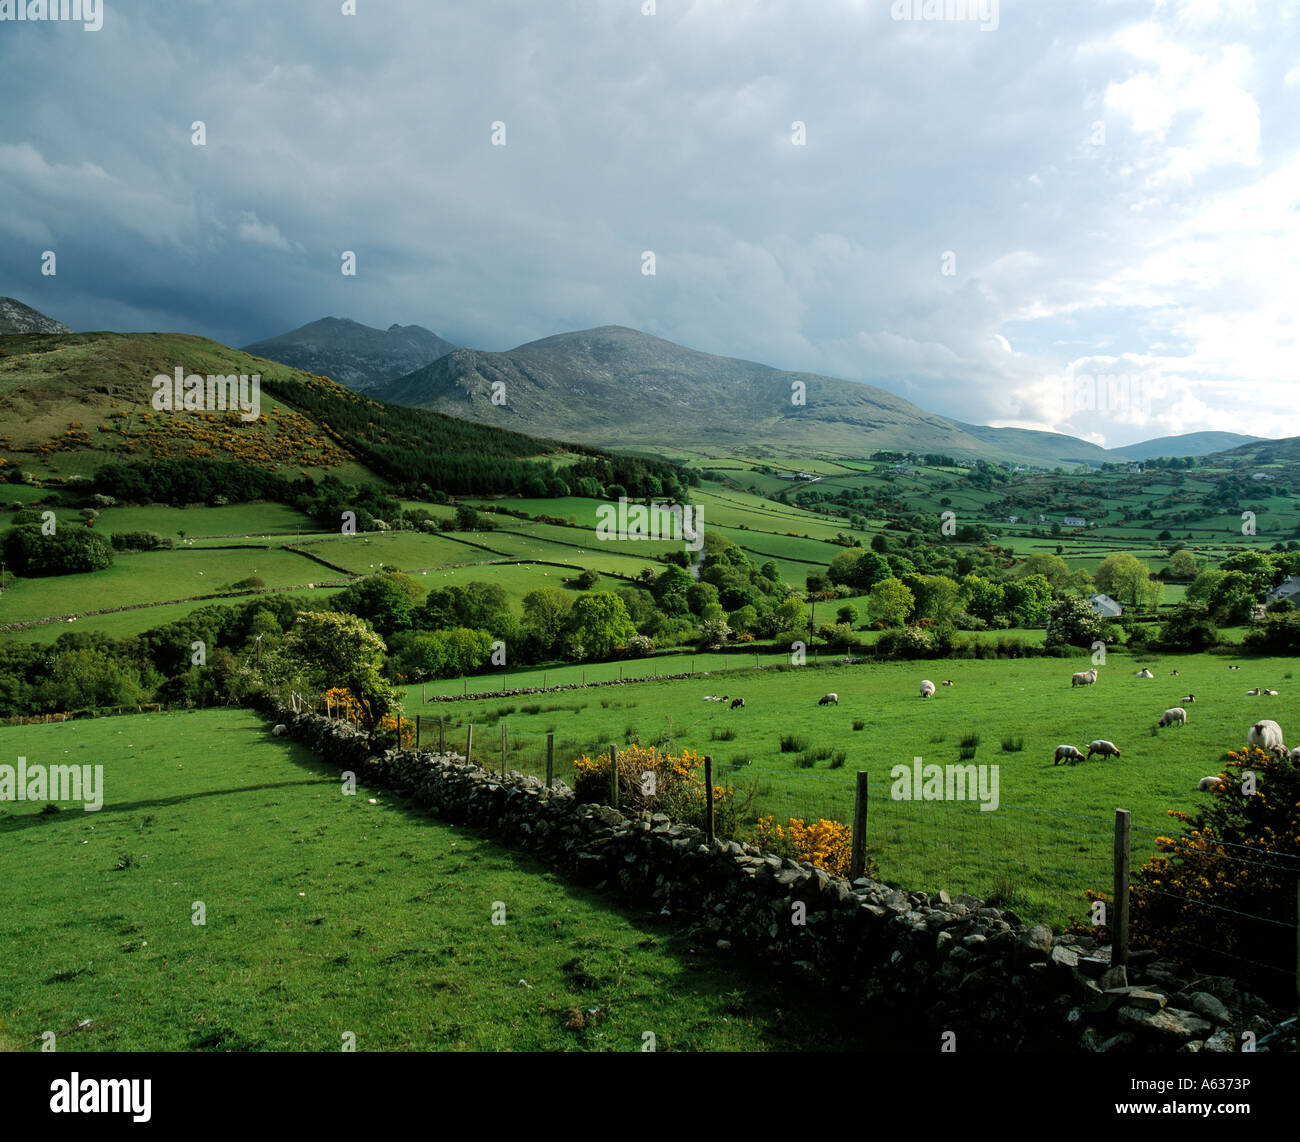 Irlanda, County Tyrone, sperrin mountain piccoli campi verdi con pecore al pascolo in Irlanda landscaspe incontaminata, la bellezza della natura, Foto Stock